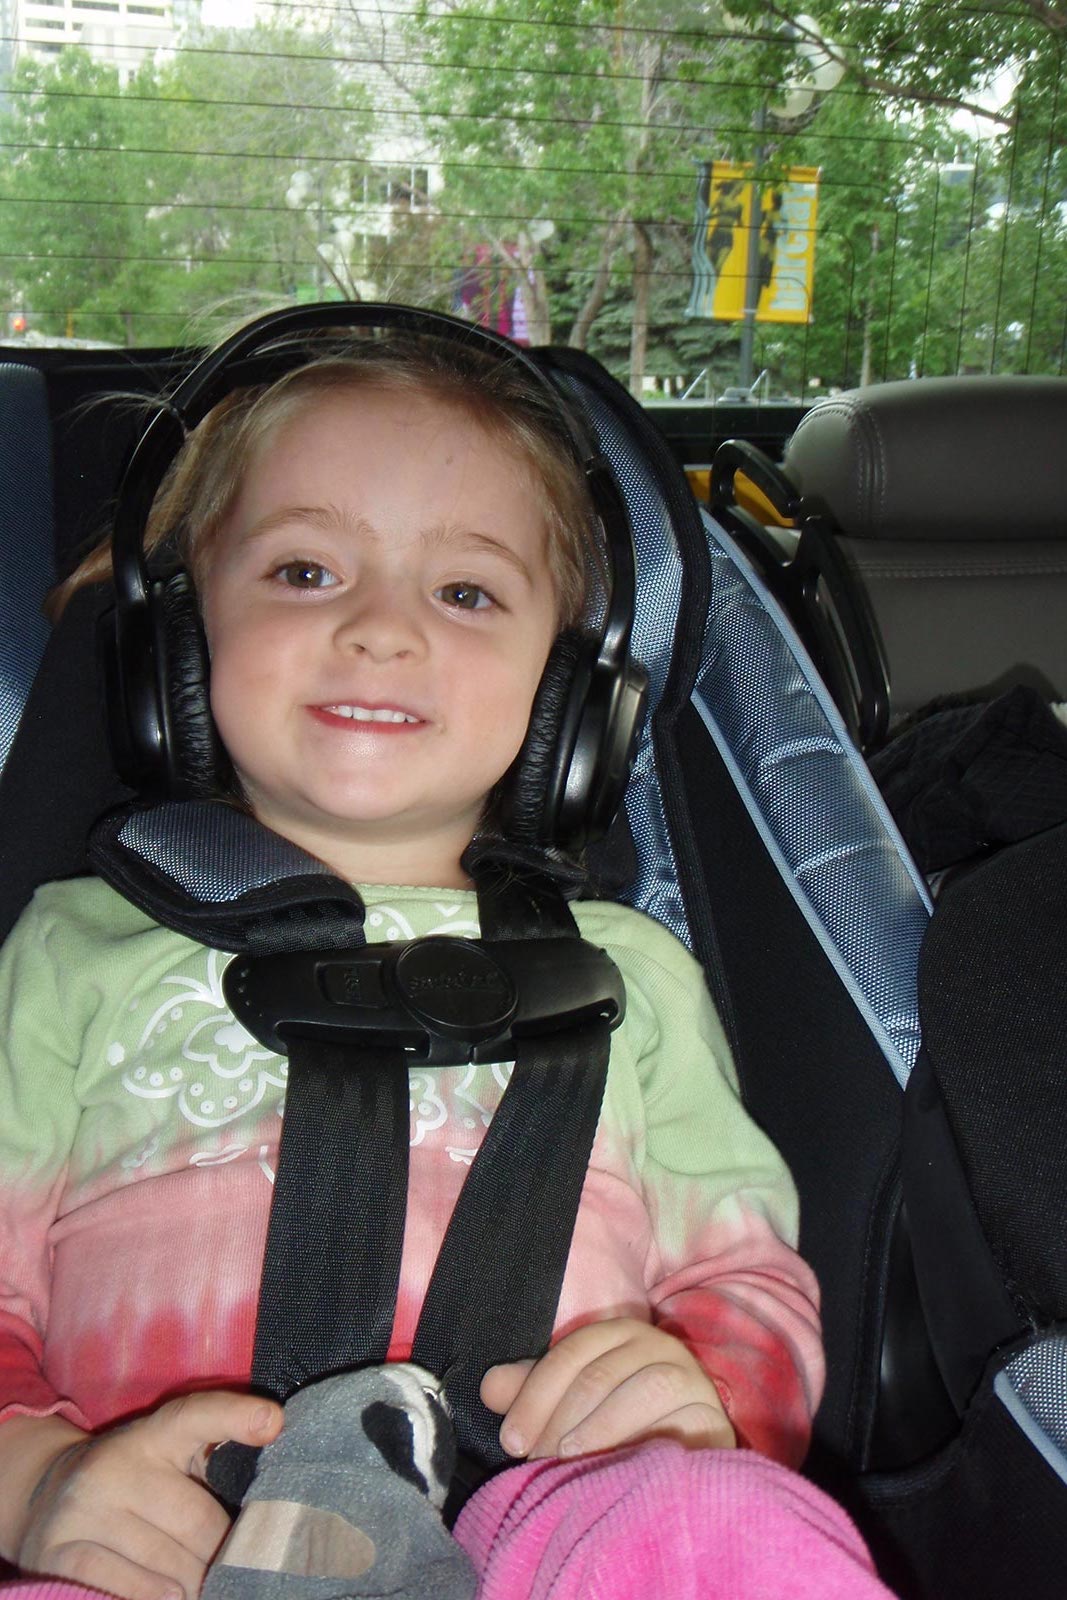 Little girl wearing headphones inside vehicle in Calgary. Cowboys in Calgary